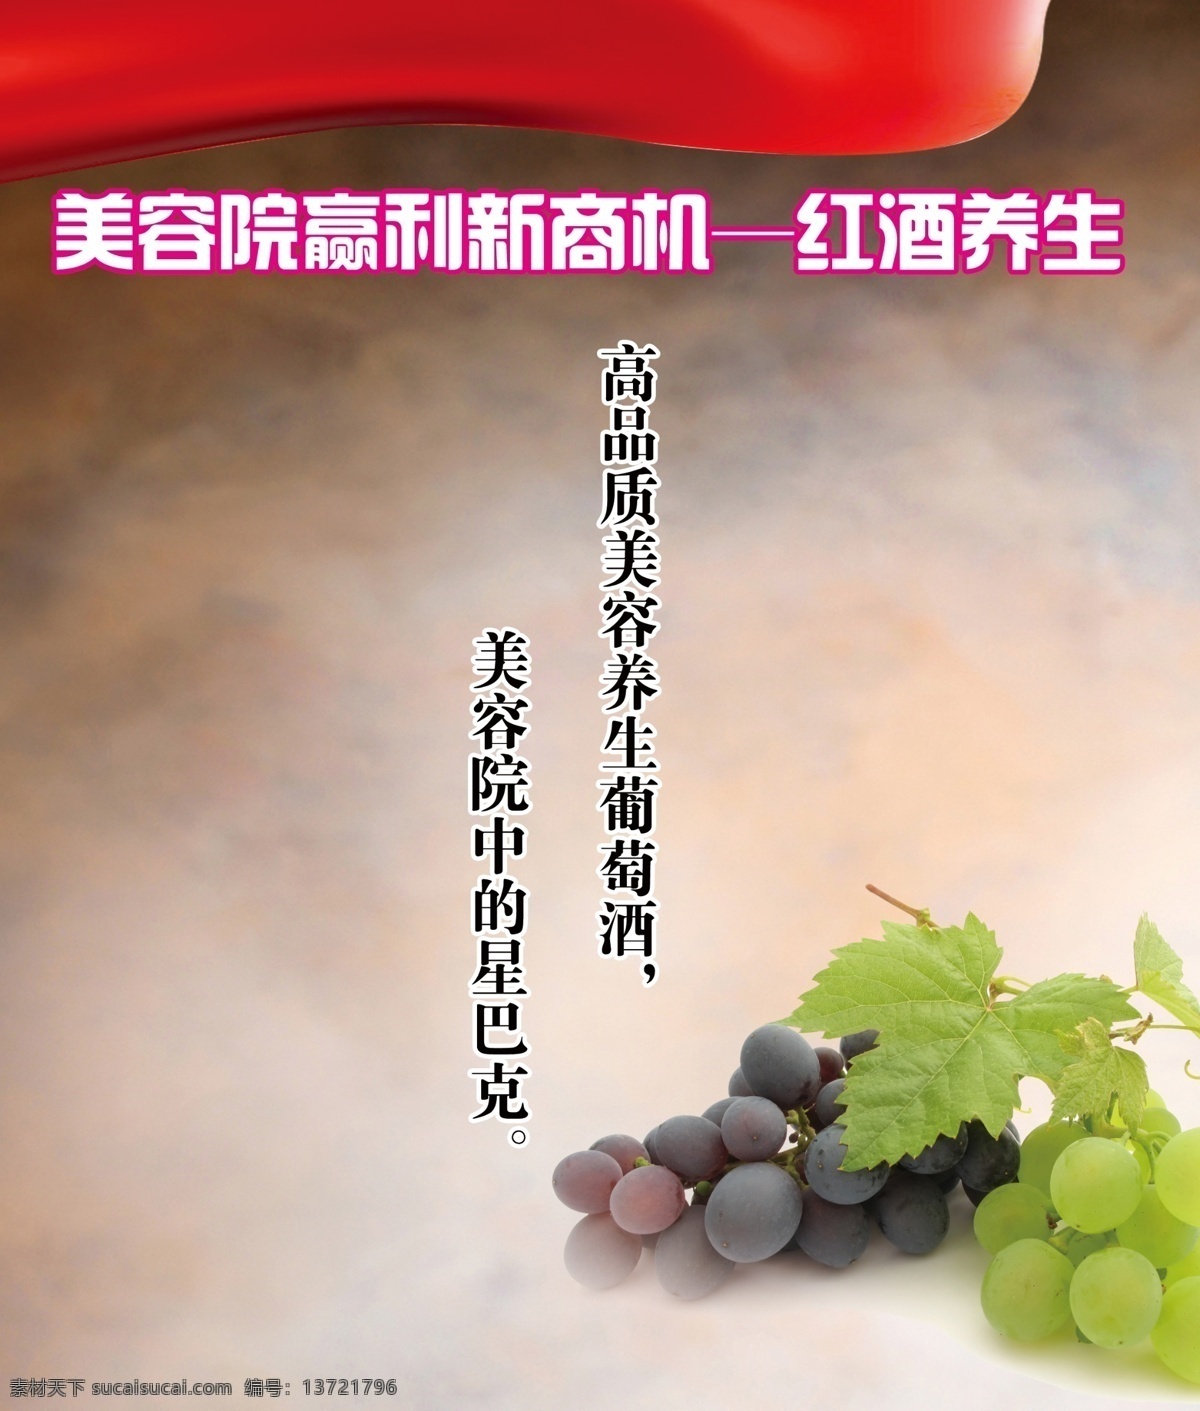 红酒文化 养生素材 养生 红酒免费下载 炀 psd源文件 餐饮素材